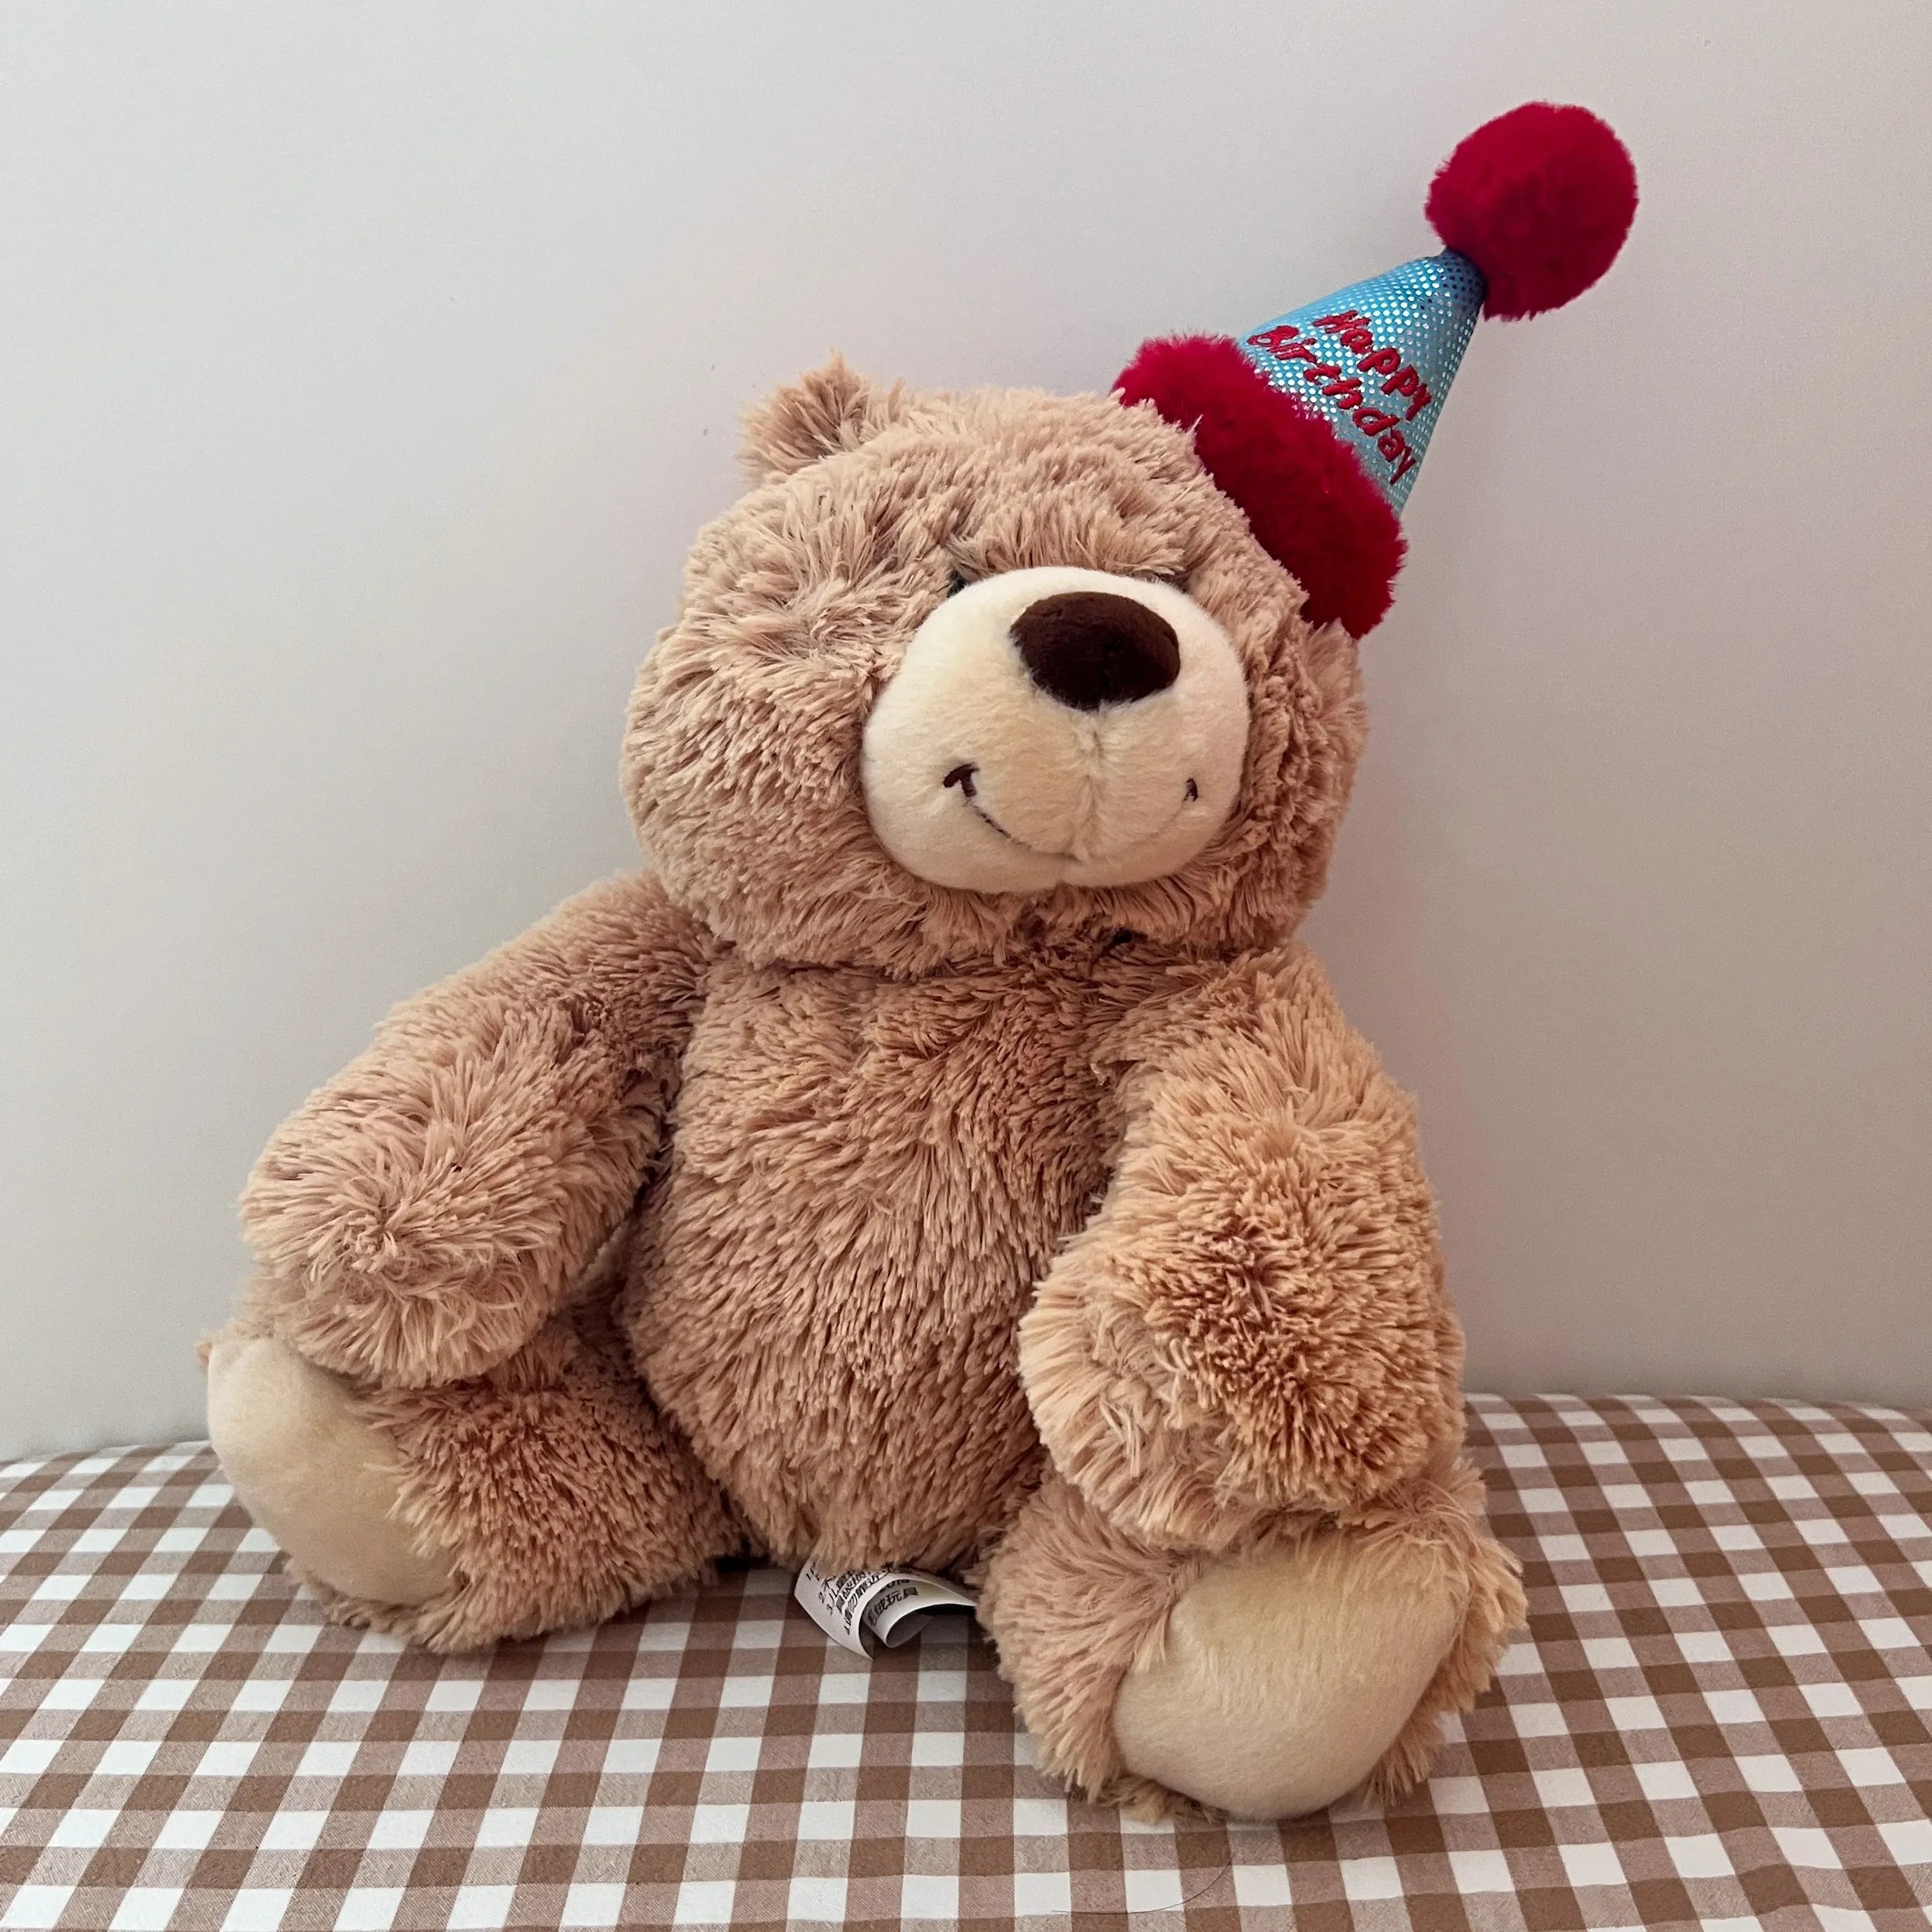 Add Ons: Happy Birthday Bear